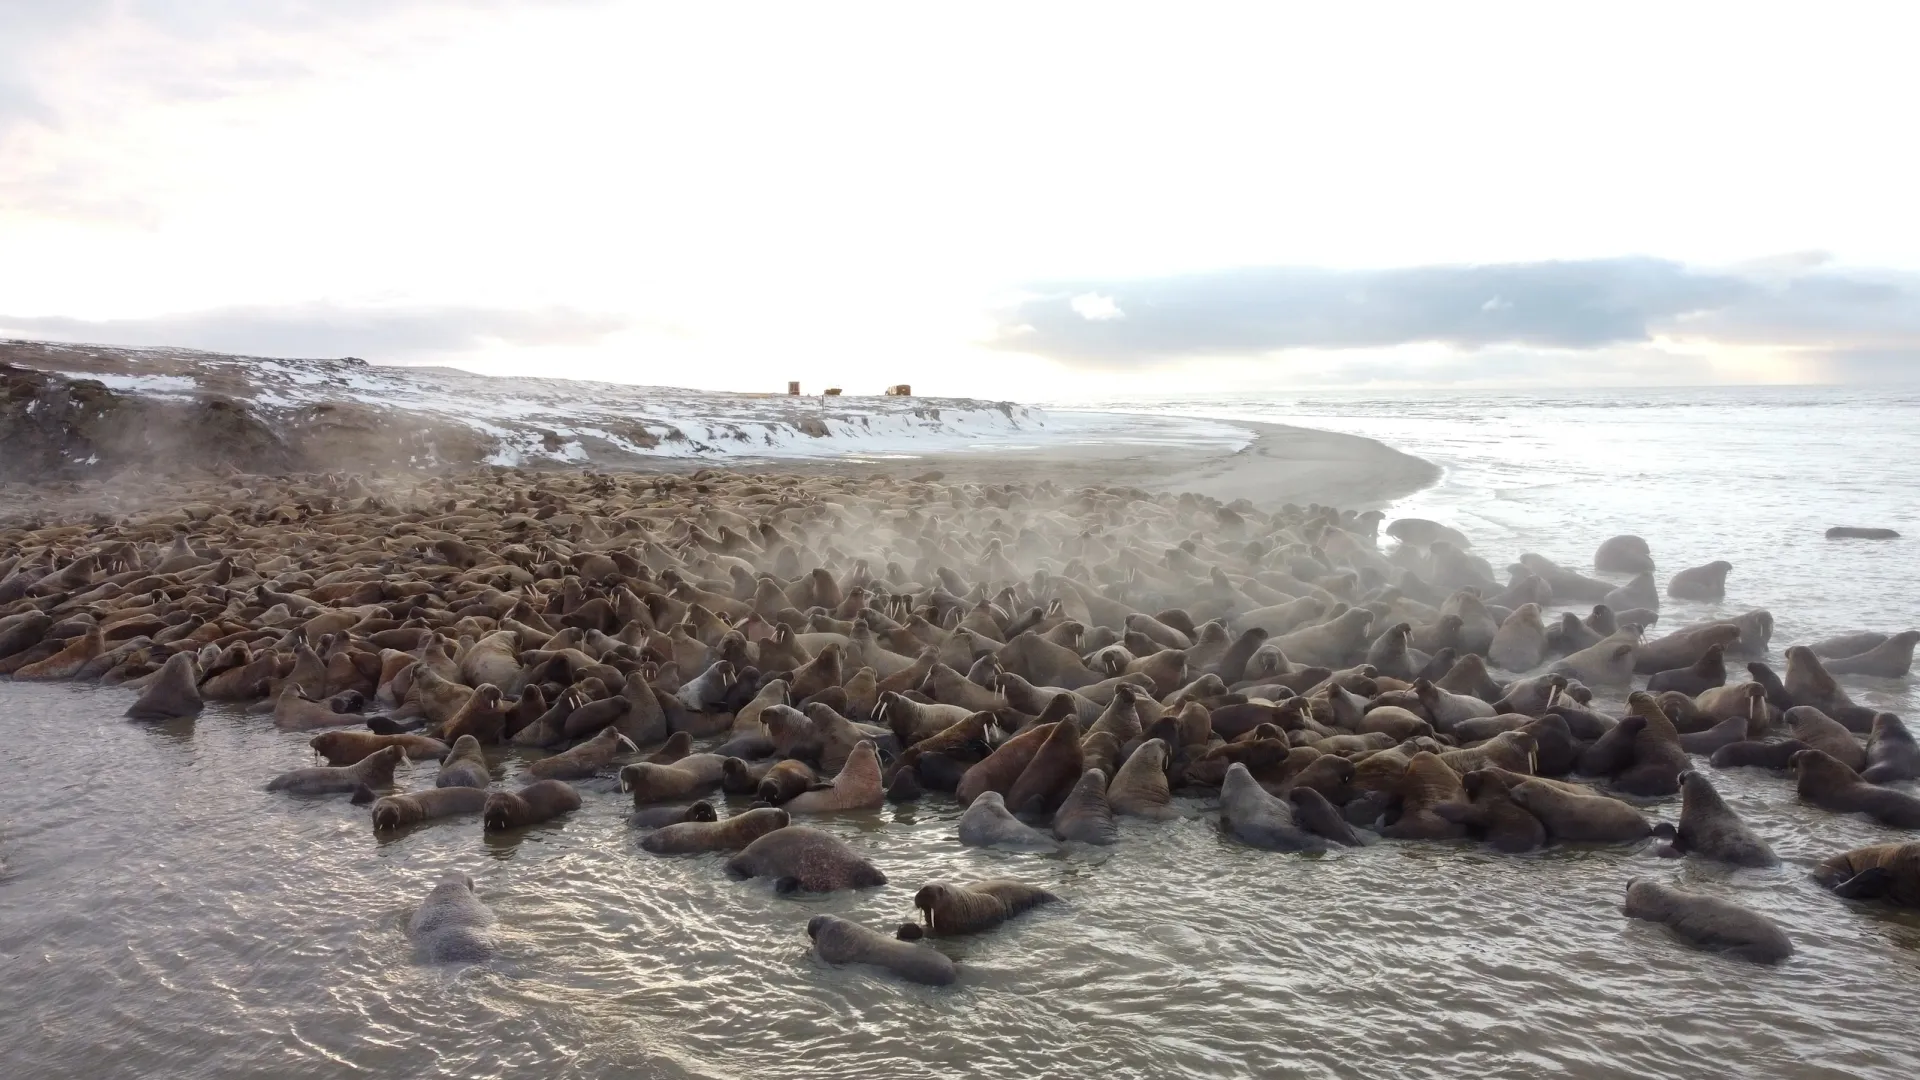 Популяция моржей насчитывает пять тысяч особей. Фото предоставлено пресс-службой губернатора ЯНАО